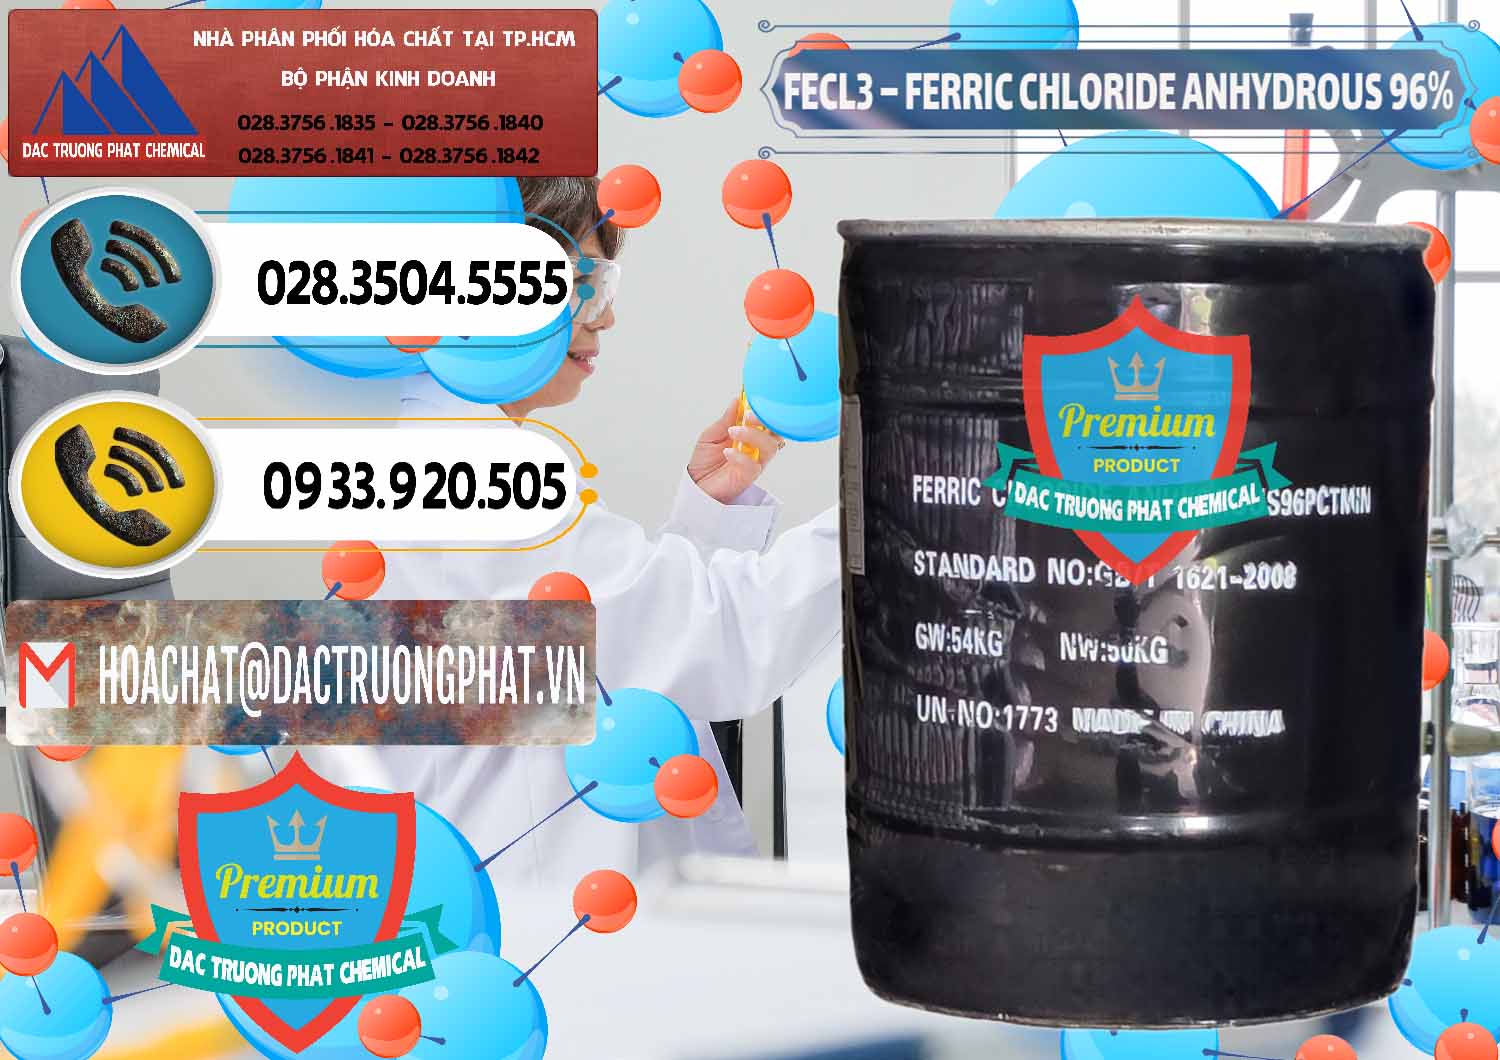 Công ty chuyên nhập khẩu và bán FECL3 – Ferric Chloride Anhydrous 96% Trung Quốc China - 0065 - Nơi chuyên cung cấp & nhập khẩu hóa chất tại TP.HCM - hoachatdetnhuom.vn